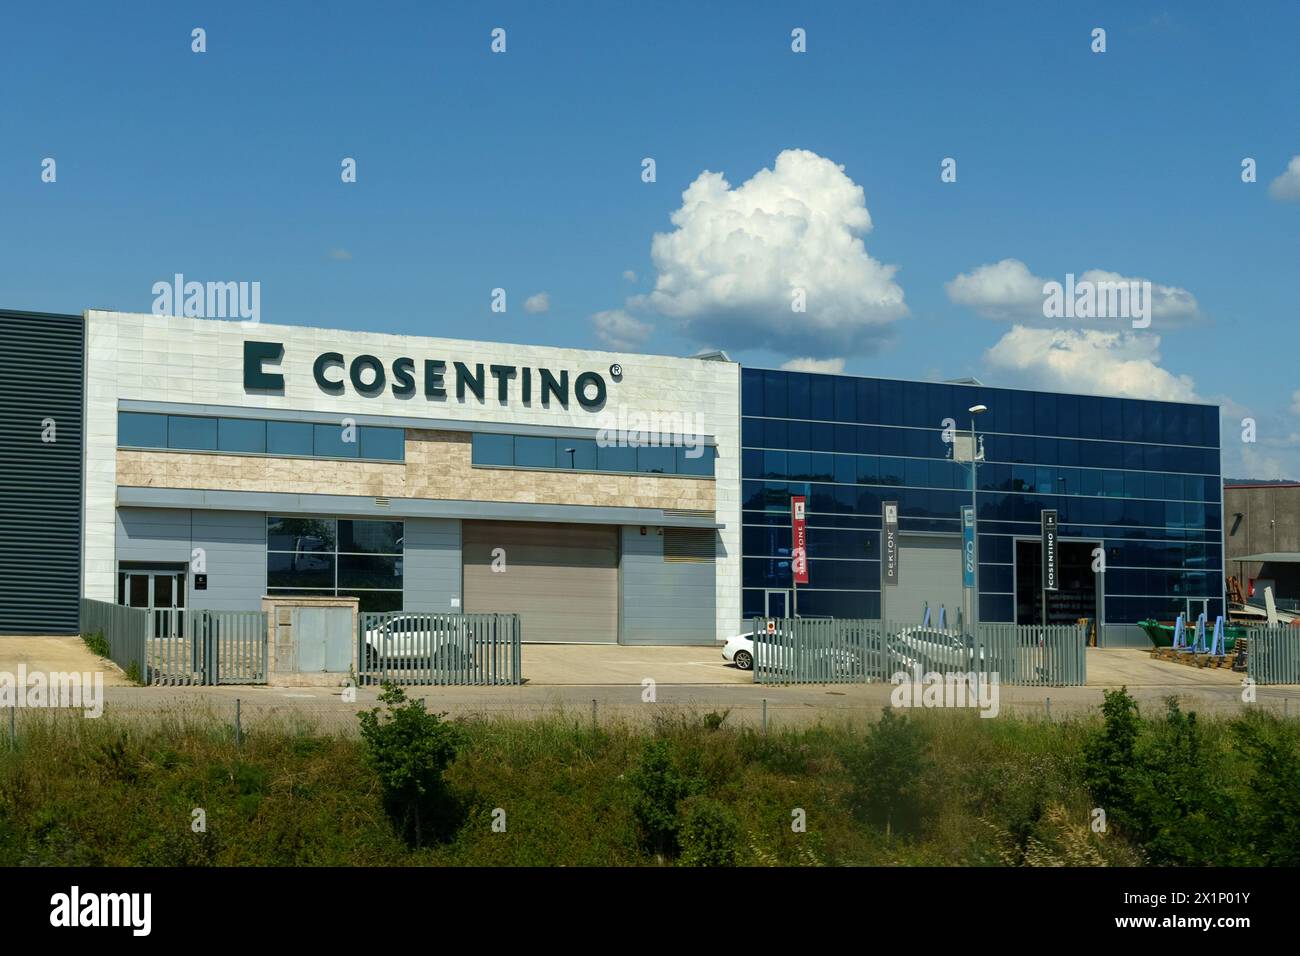 Barcellona, Spagna - 24 maggio 2023: La facciata moderna dell'edificio Cosentino con la sua segnaletica chiara, le finestre blu e un cielo pieno di nuvole Foto Stock